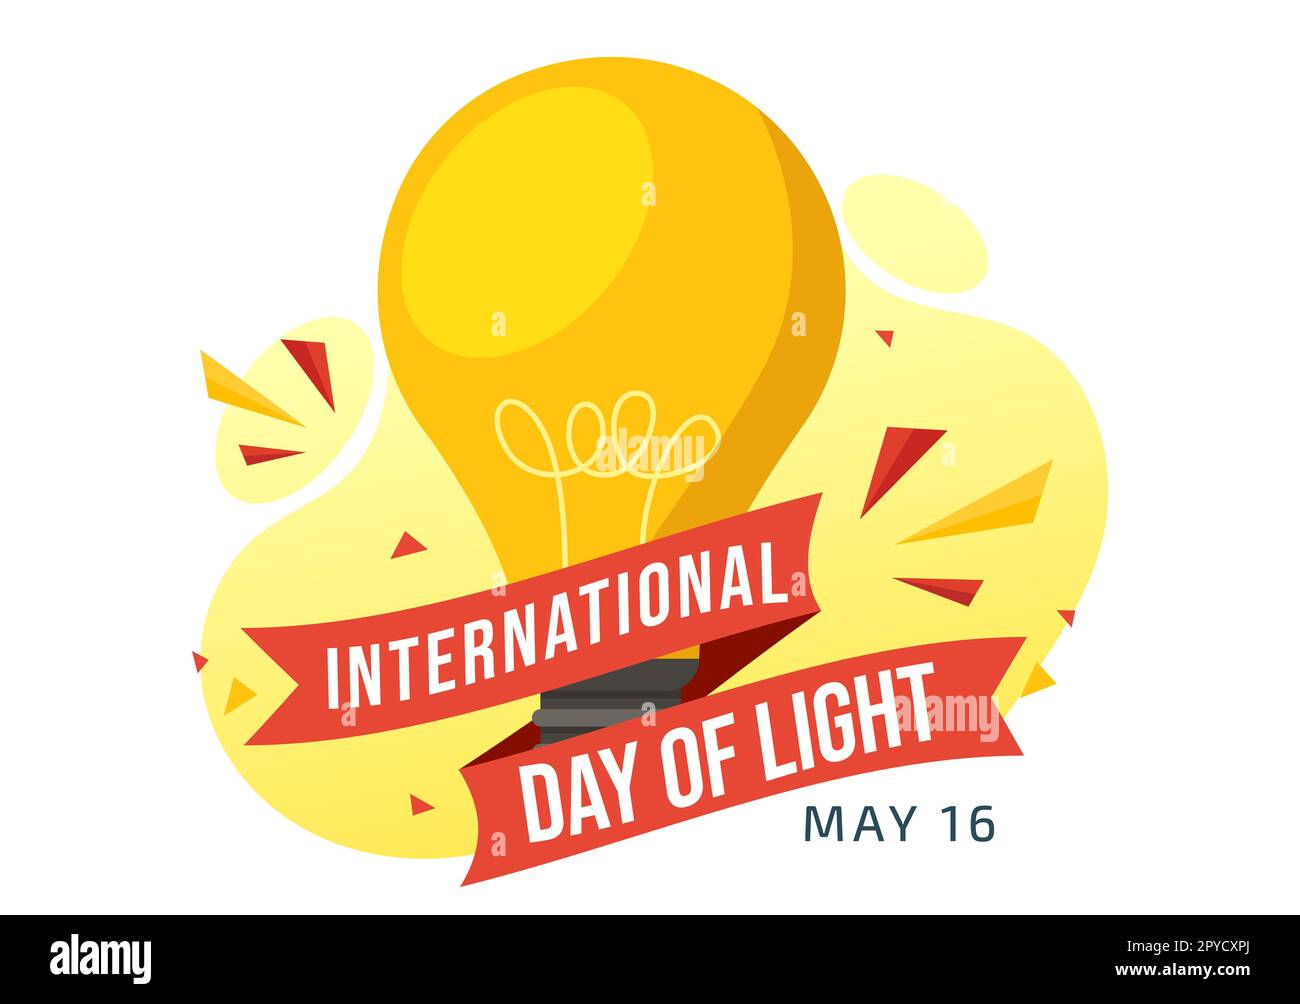 Internationaler Tag des Lichts am 16. Mai Illustration zur Bedeutung der Verwendung von Lampen in flachen Cartoons handgezeichnet für Banner- oder Landing-Page-Vorlagen Stockfoto